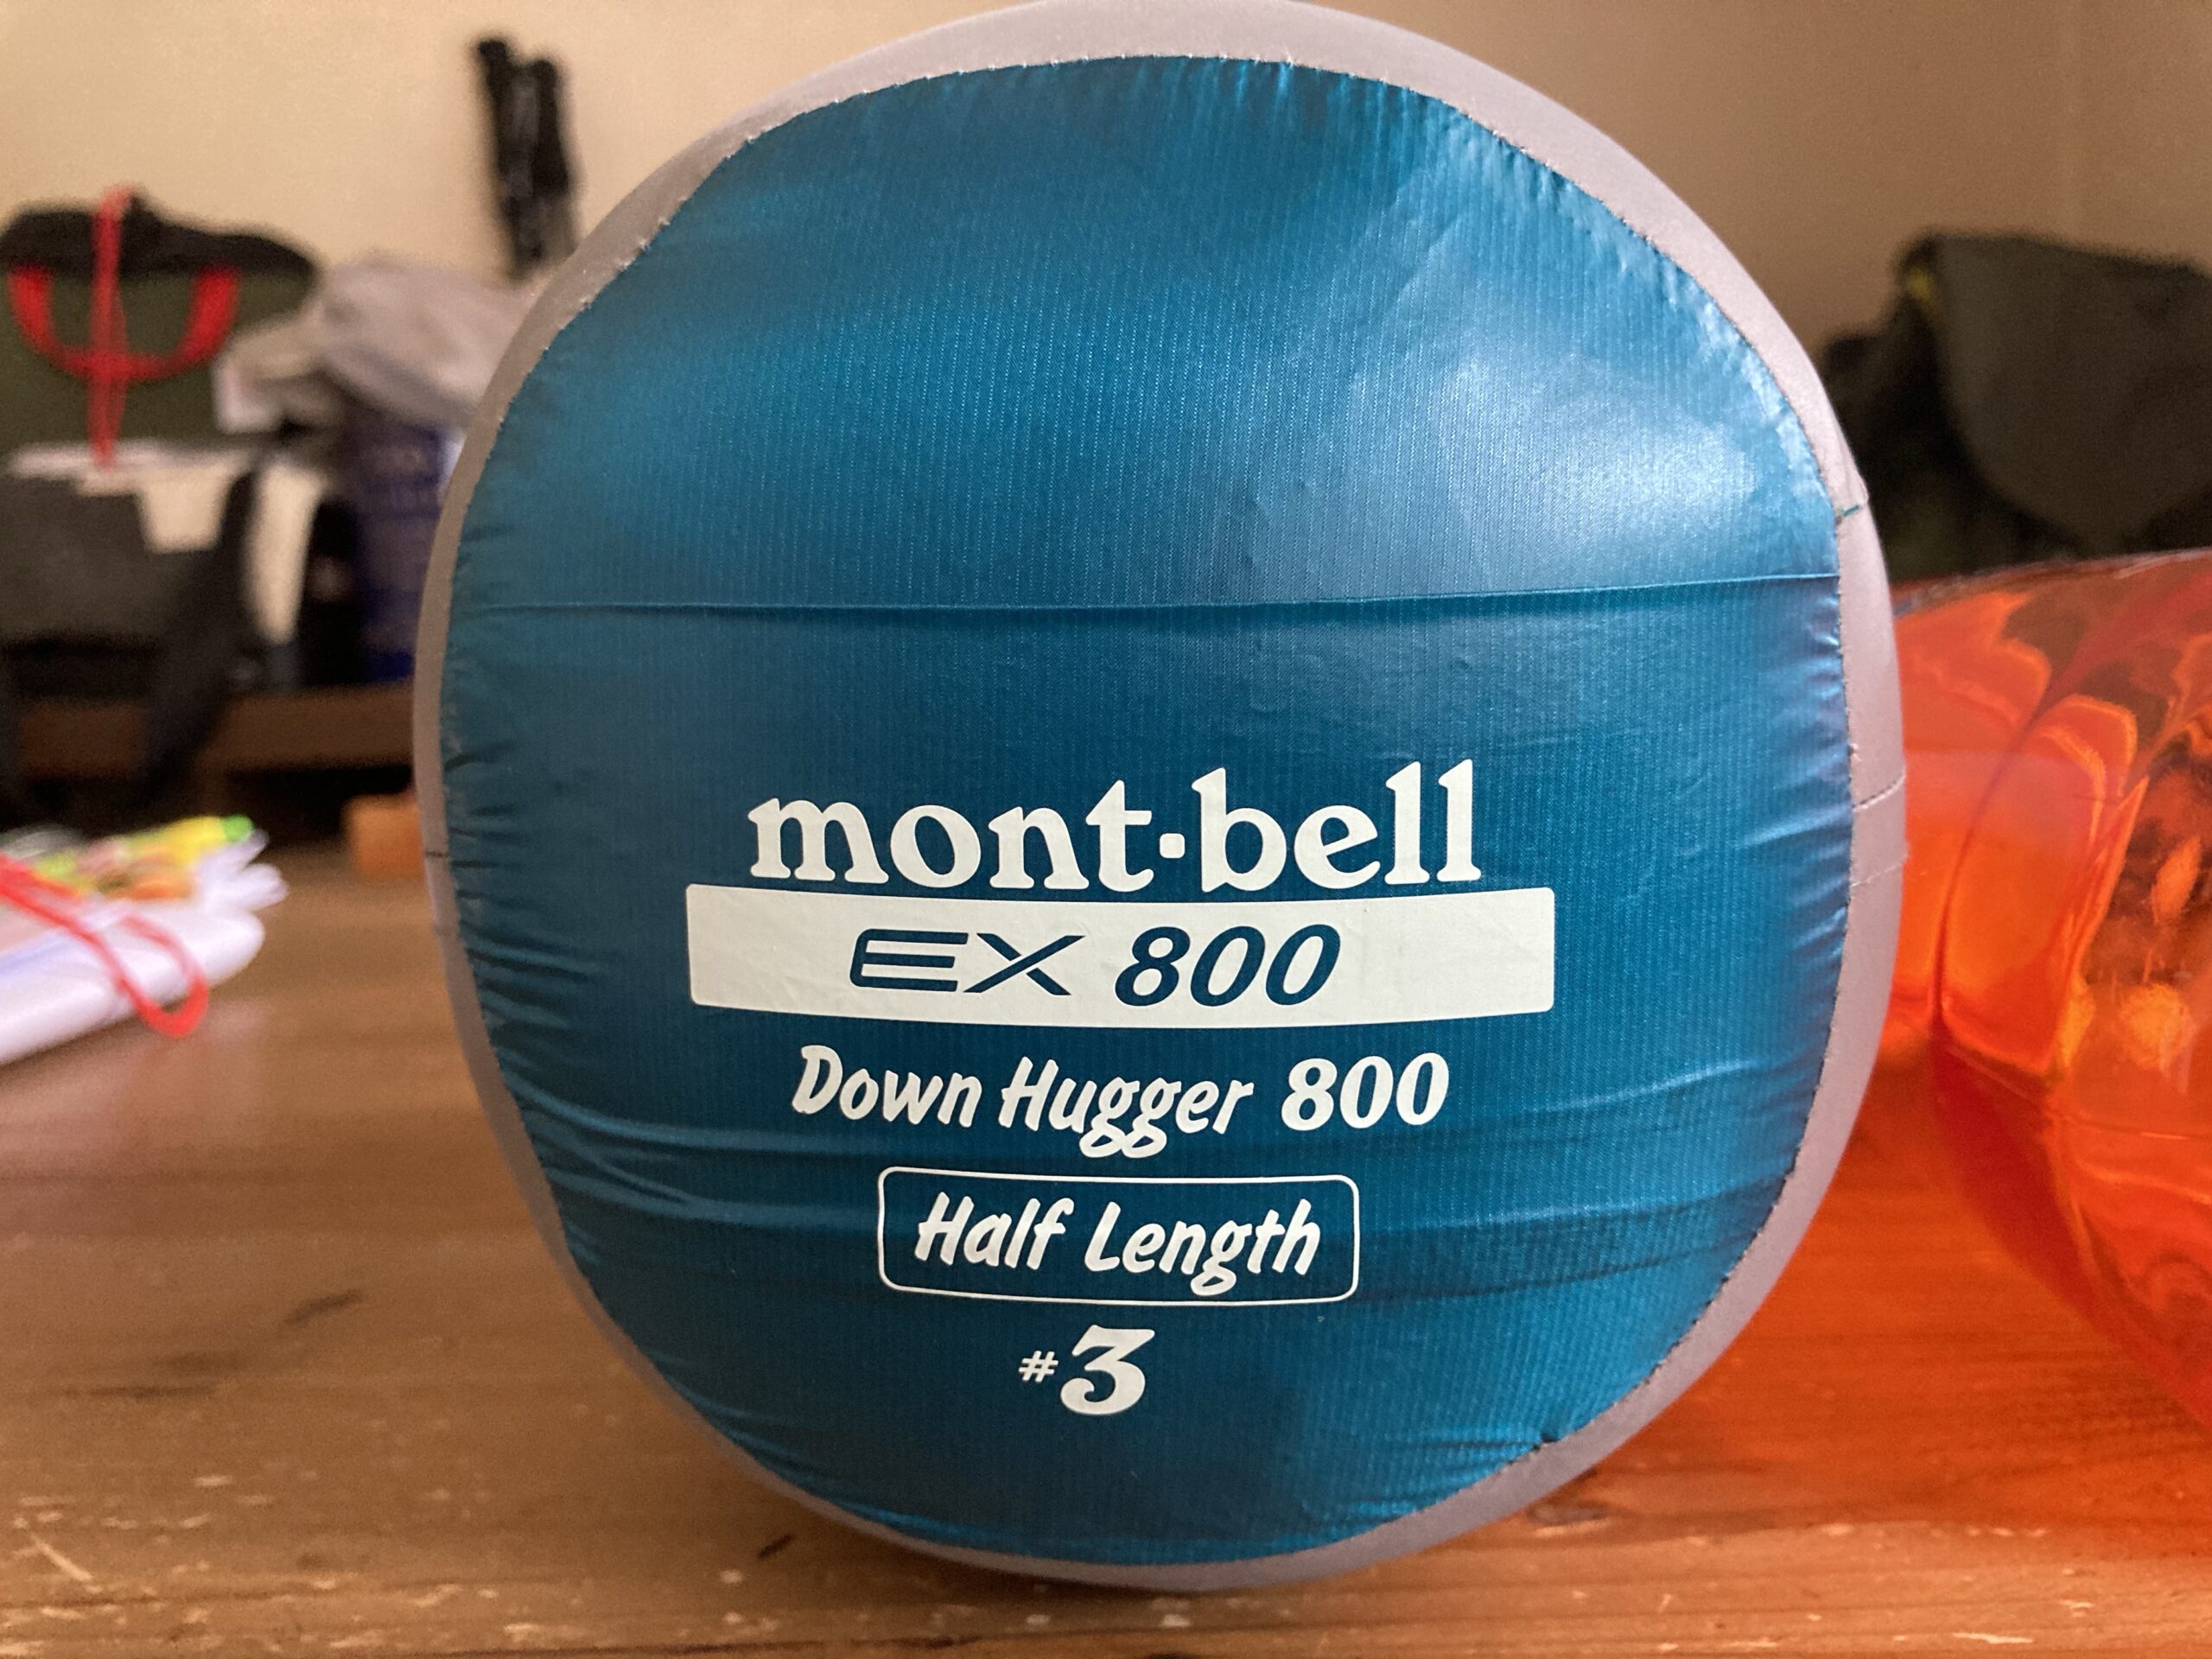 mont-bell ダウンハガーex800 #3 ハーフレングス-